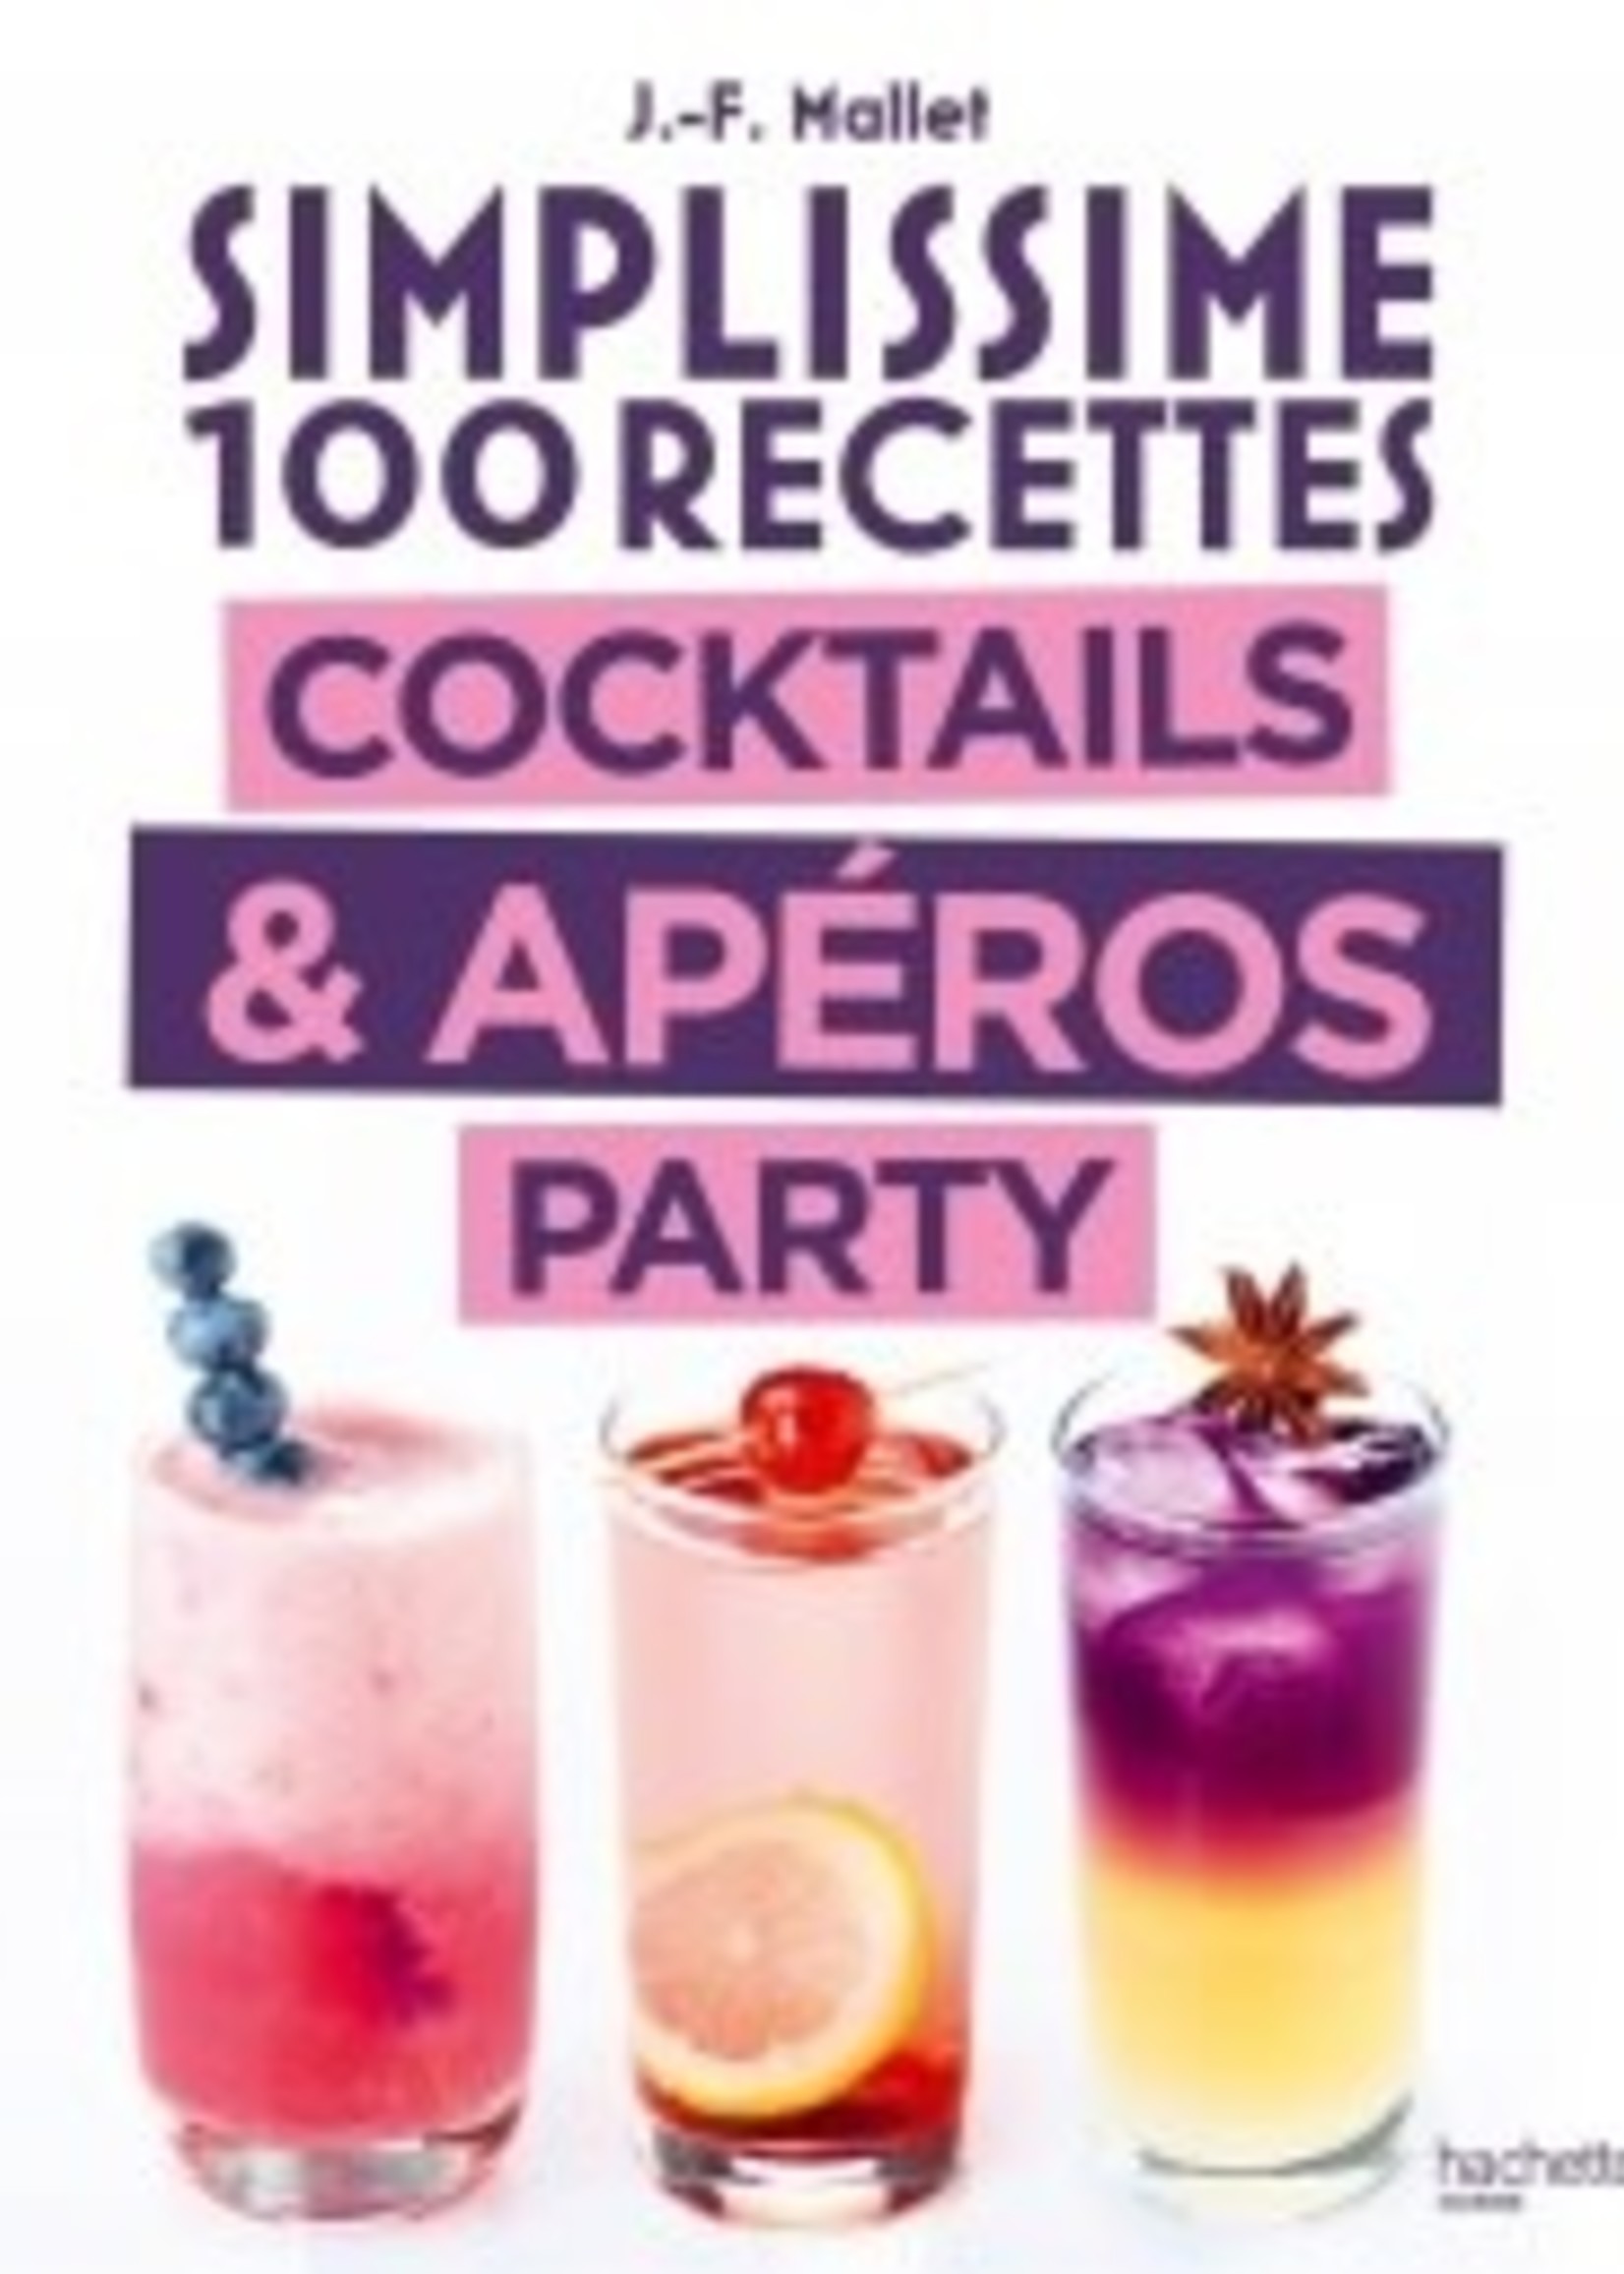 Hachette Simplissime 100 recettes cocktails & apéros party - Jean-François Mallet